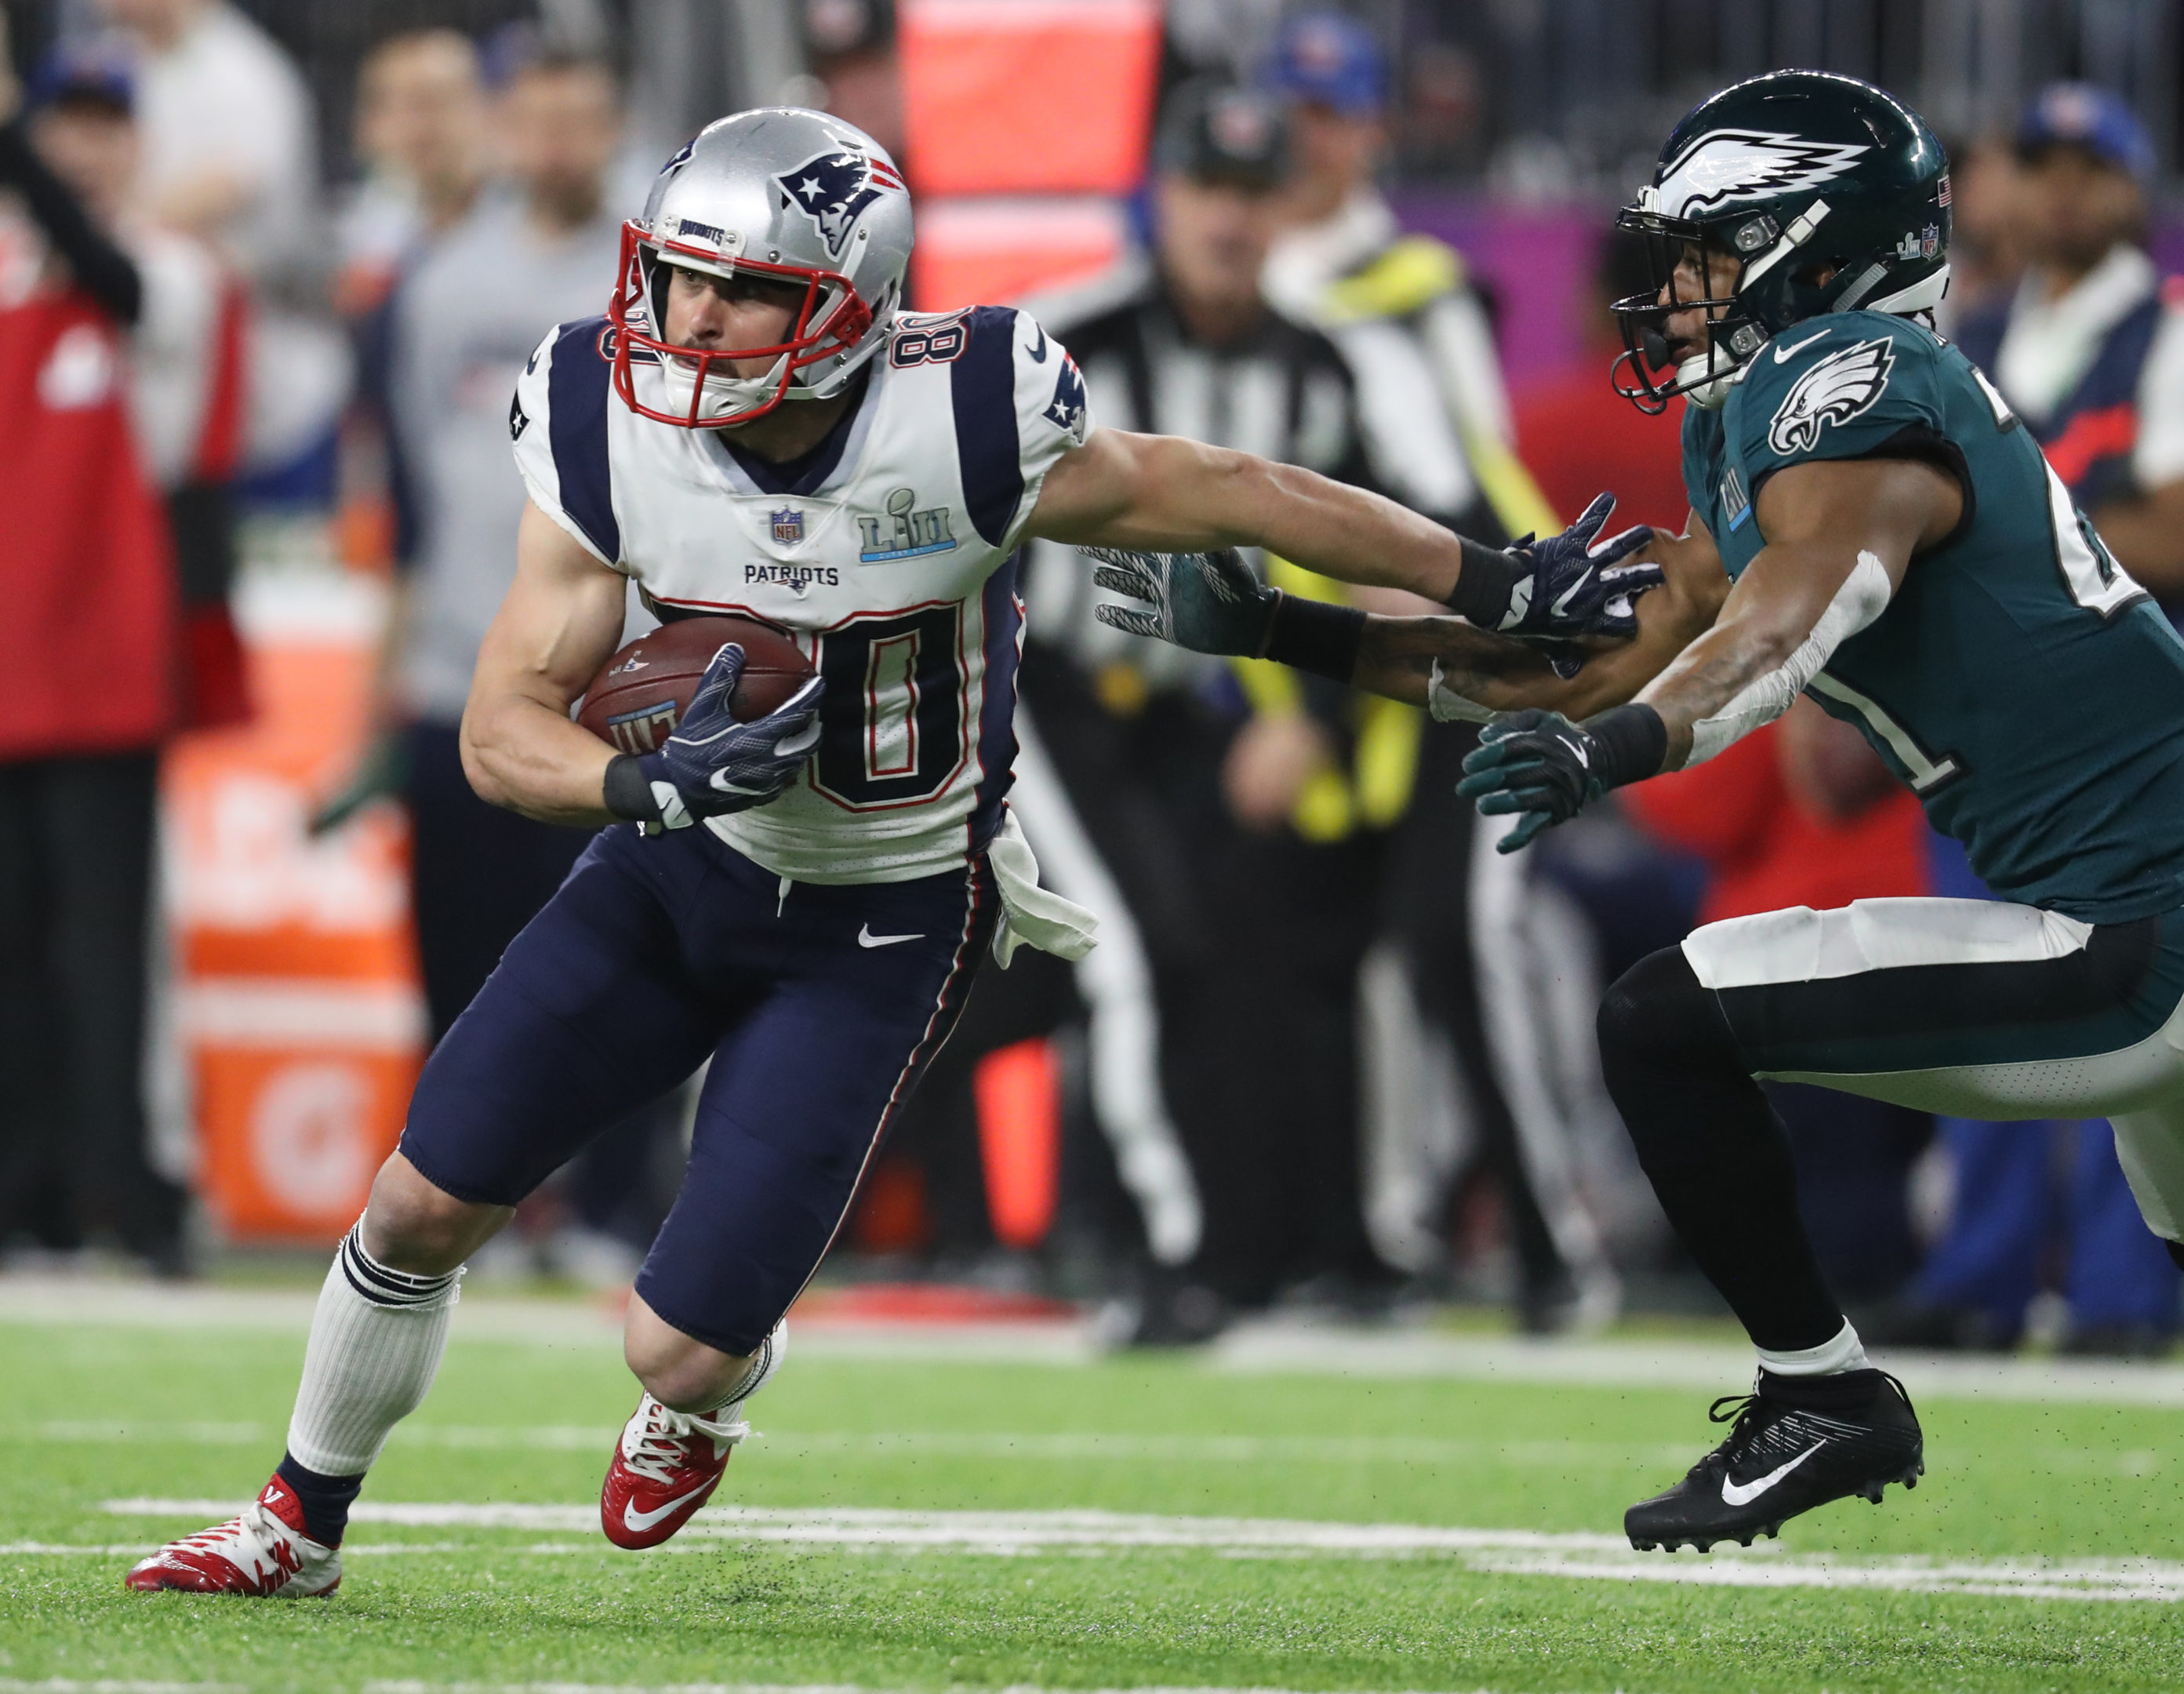 Danny Amendola Super Bowl LII New England Patriots wide receiver